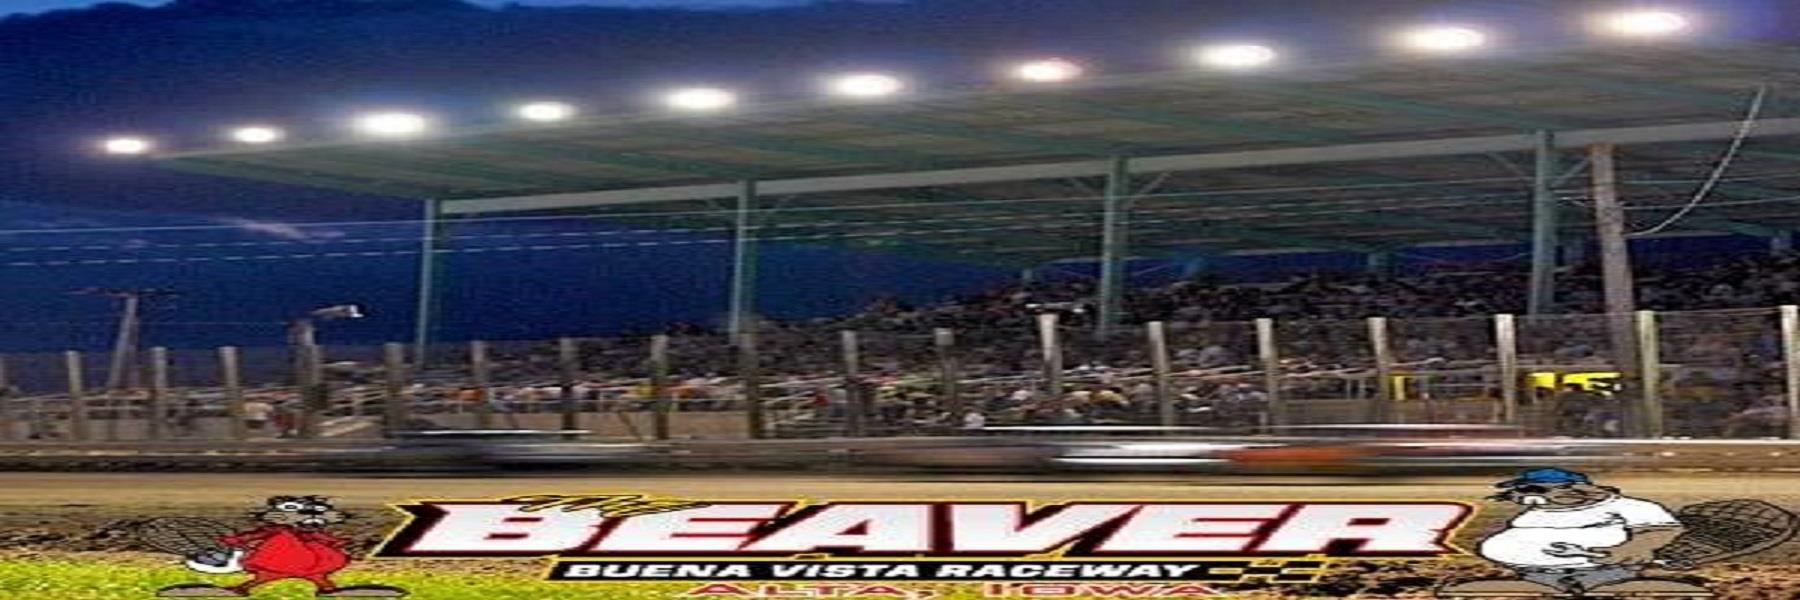 6/28/2022 - Buena Vista Raceway